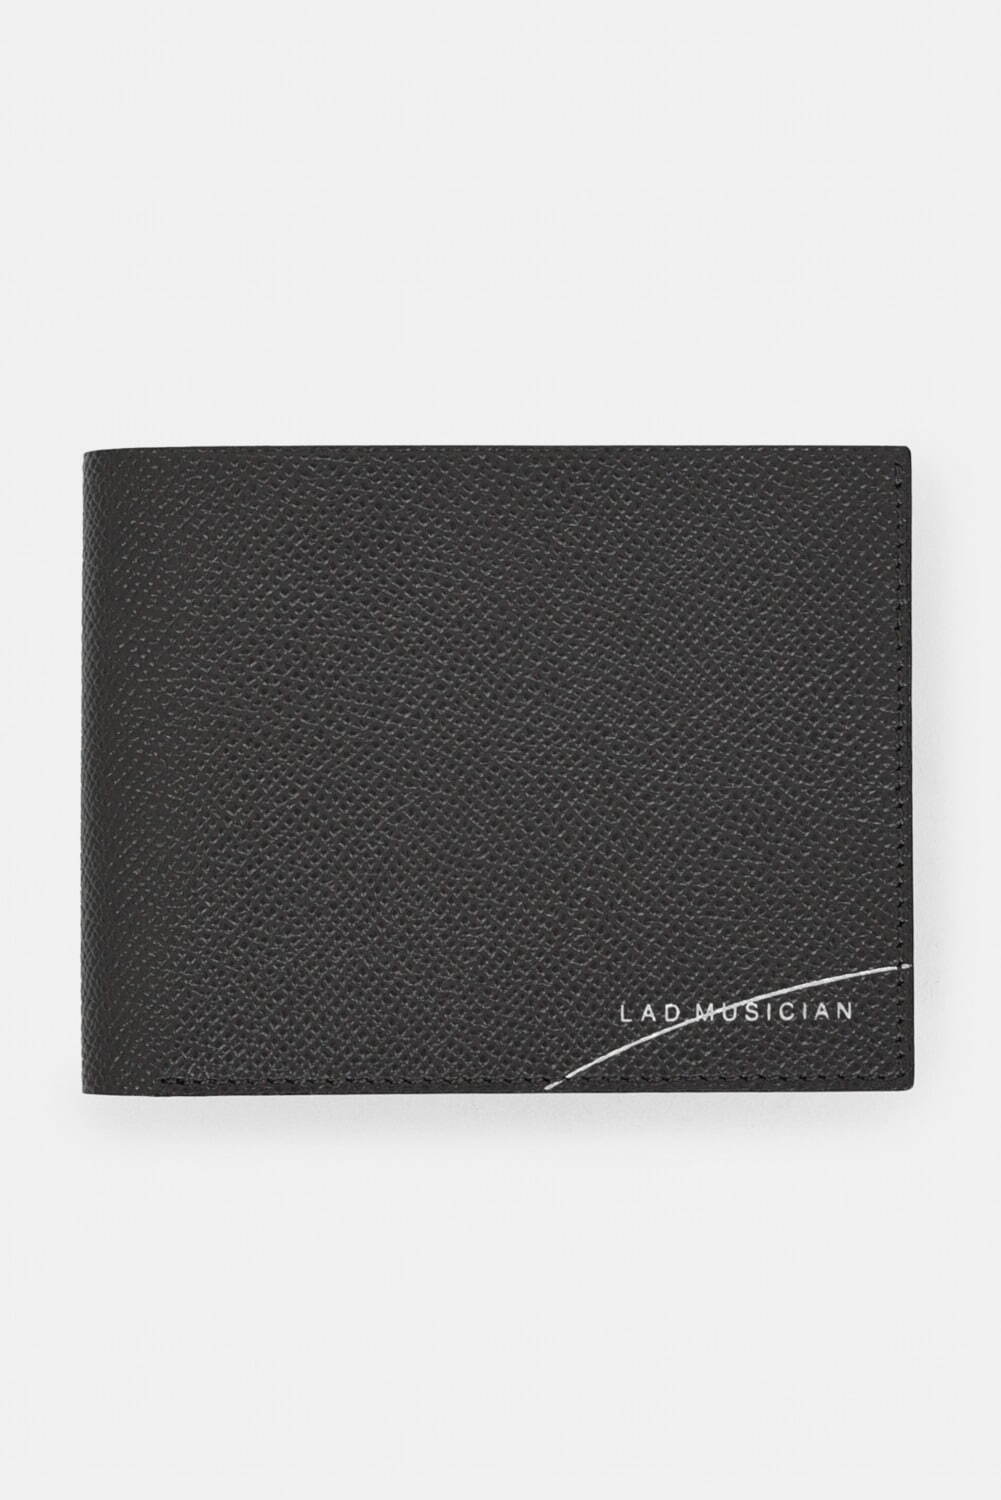 ラッド ミュージシャン初の革財布 - “1枚革”のようにしなやかなレザー